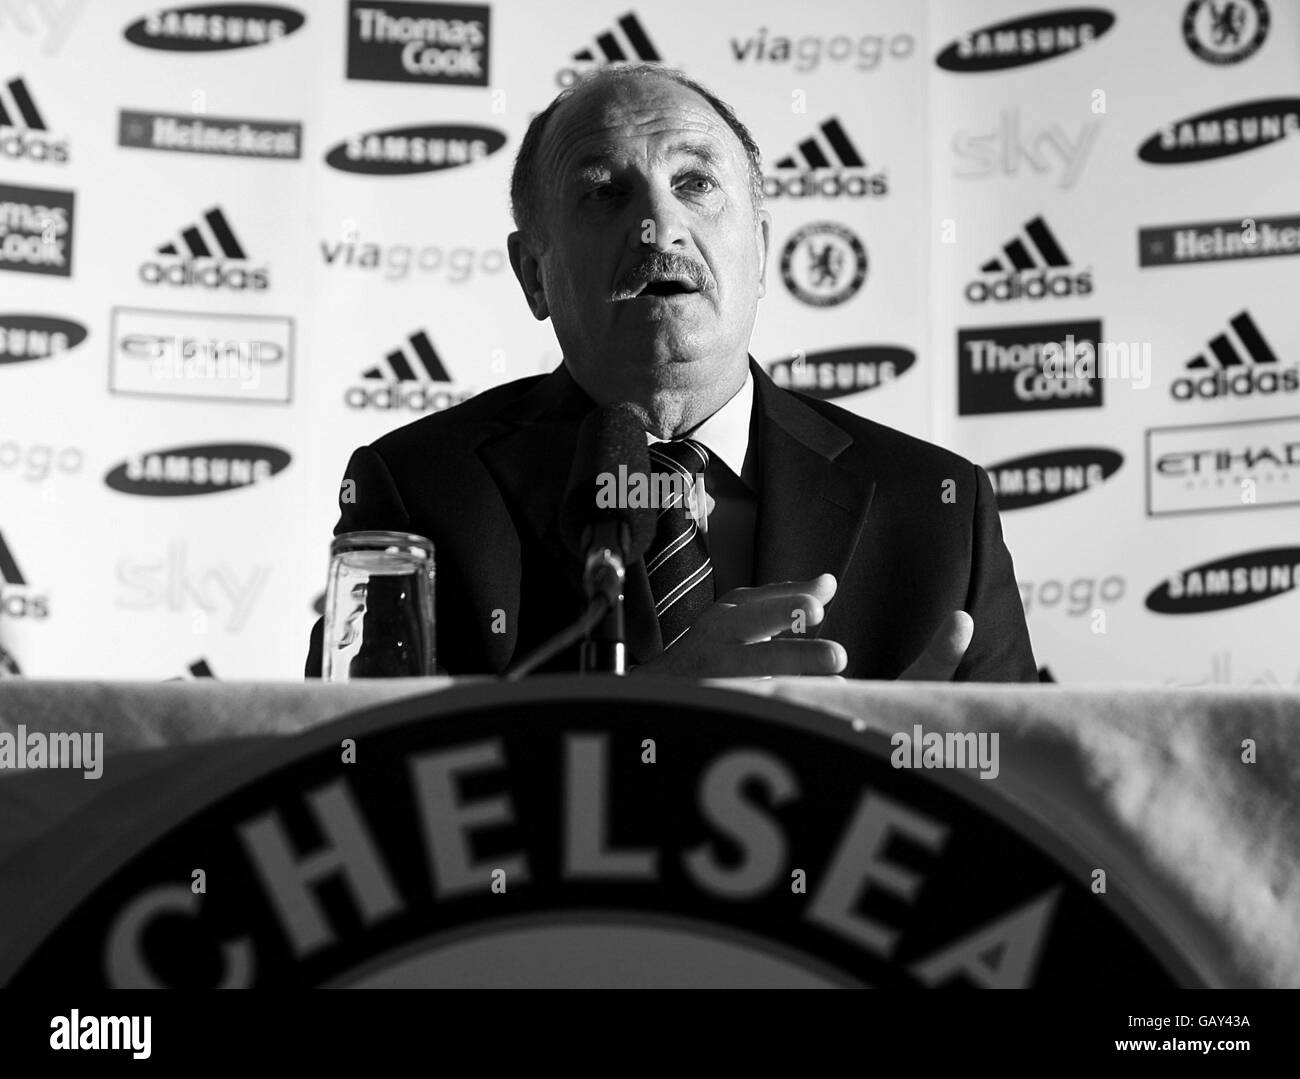 Der neue Manager von Chelsea, Luiz Roulein Scolari, während einer Pressekonferenz Stockfoto